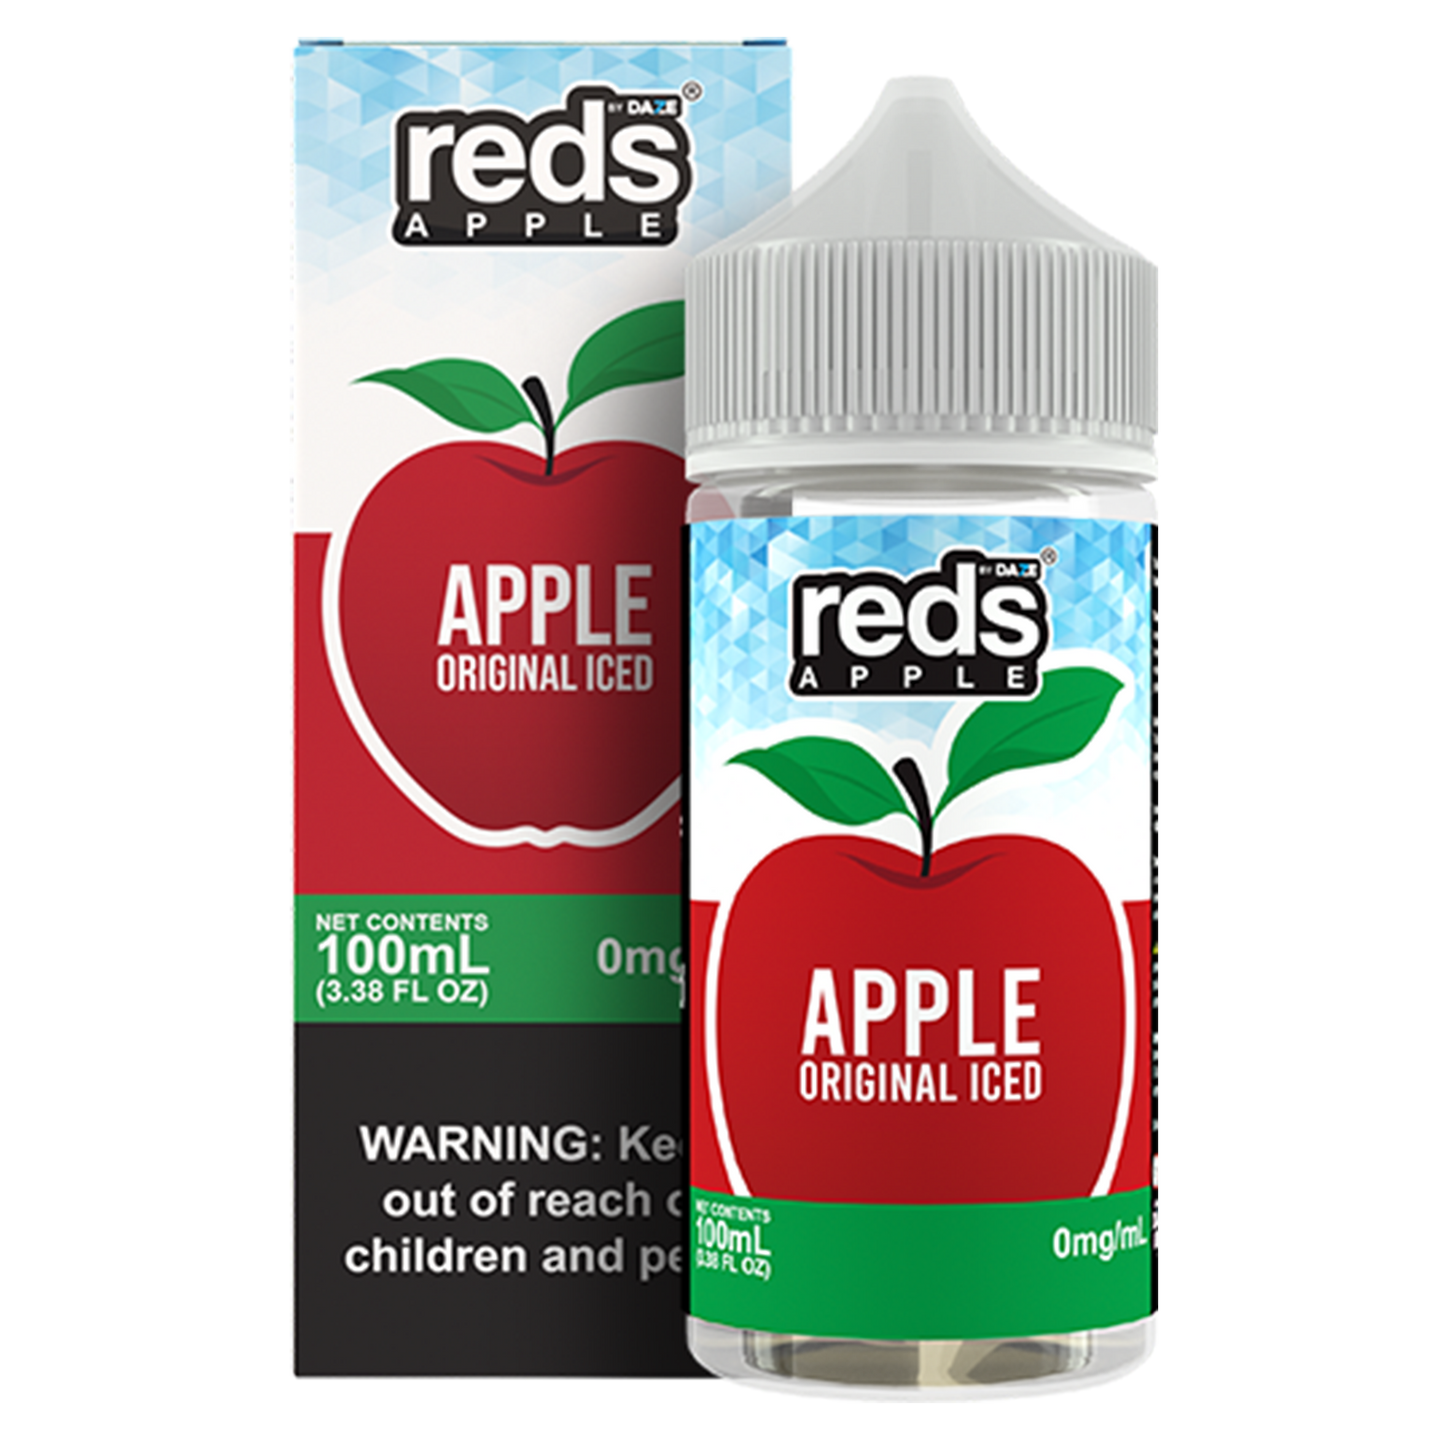 Reds: Apple Original Iced